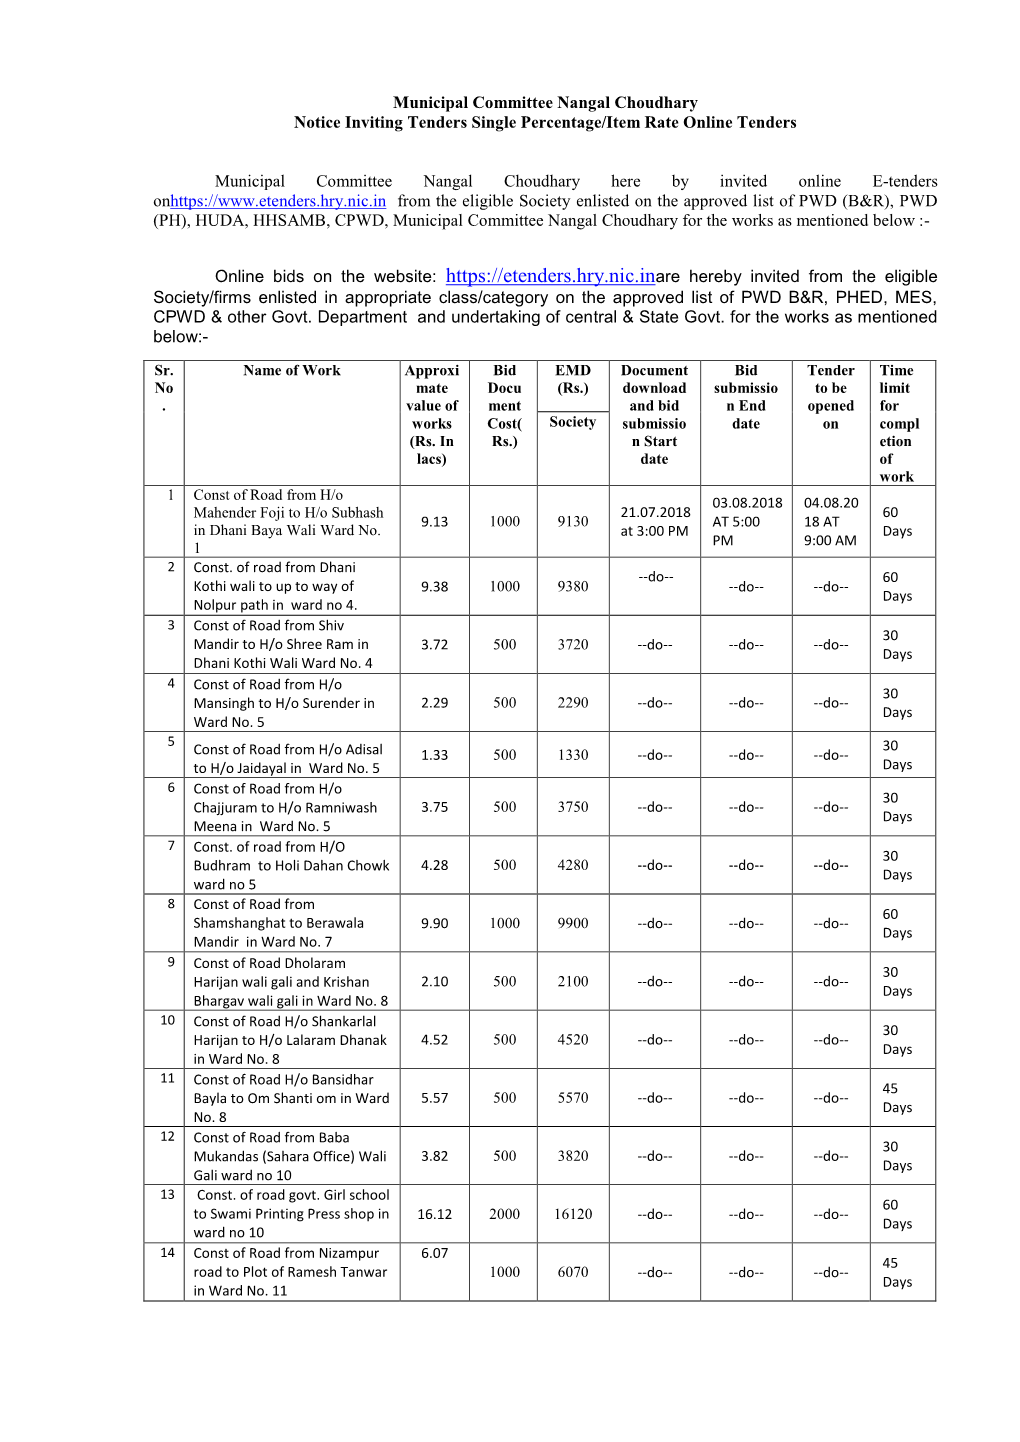 Municipal Committee Nangal Choudhary Notice Inviting Tenders Single Percentage/Item Rate Online Tenders